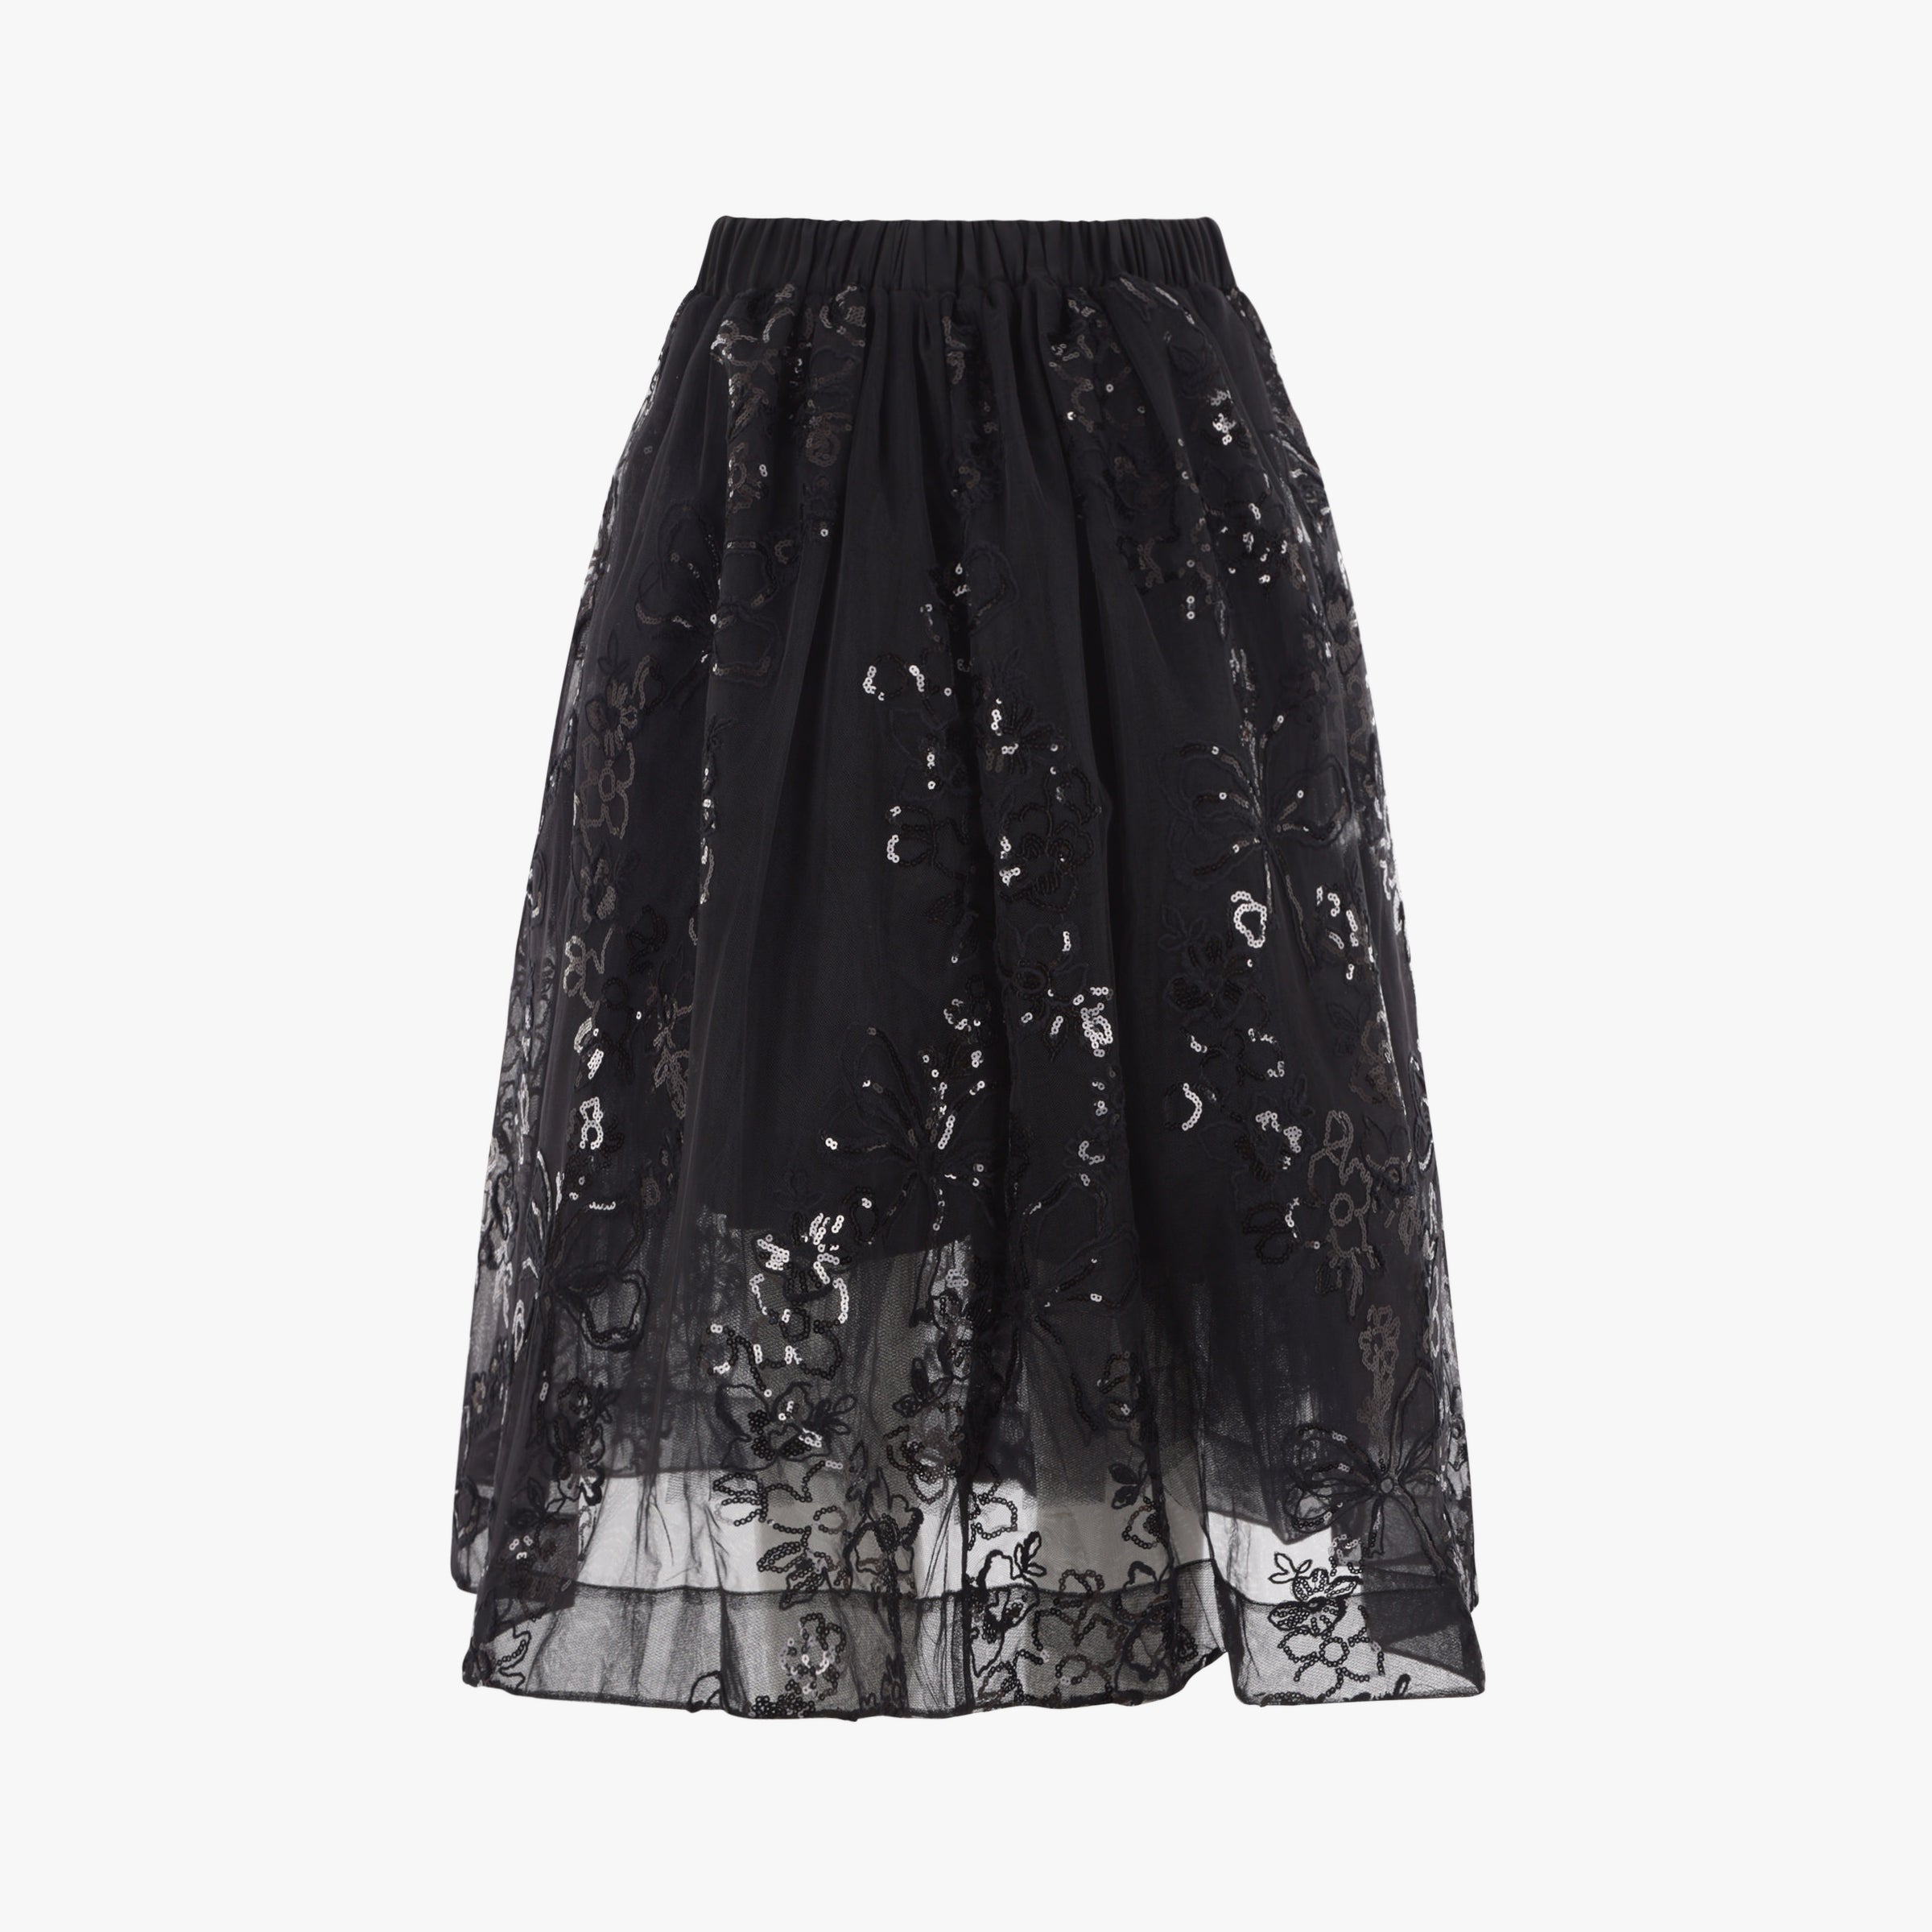 Simone Rocha Long Sequin Overlay Tutu Skirt